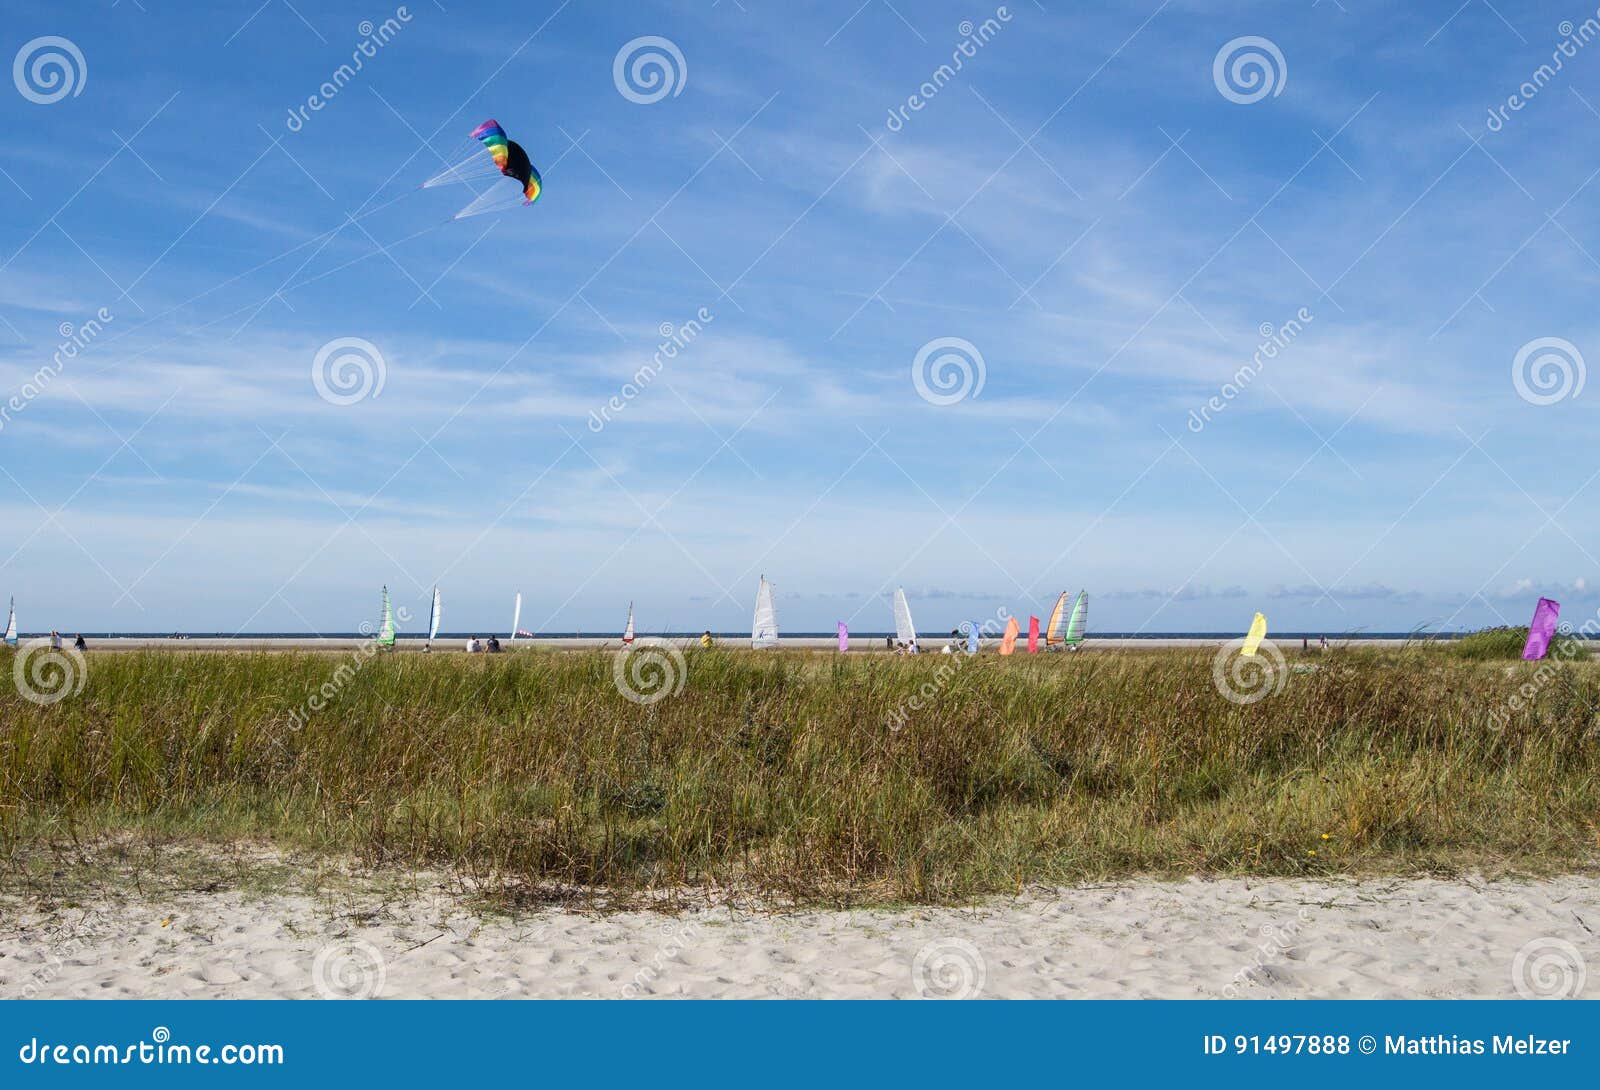 beach with kites at schiermonnikoog